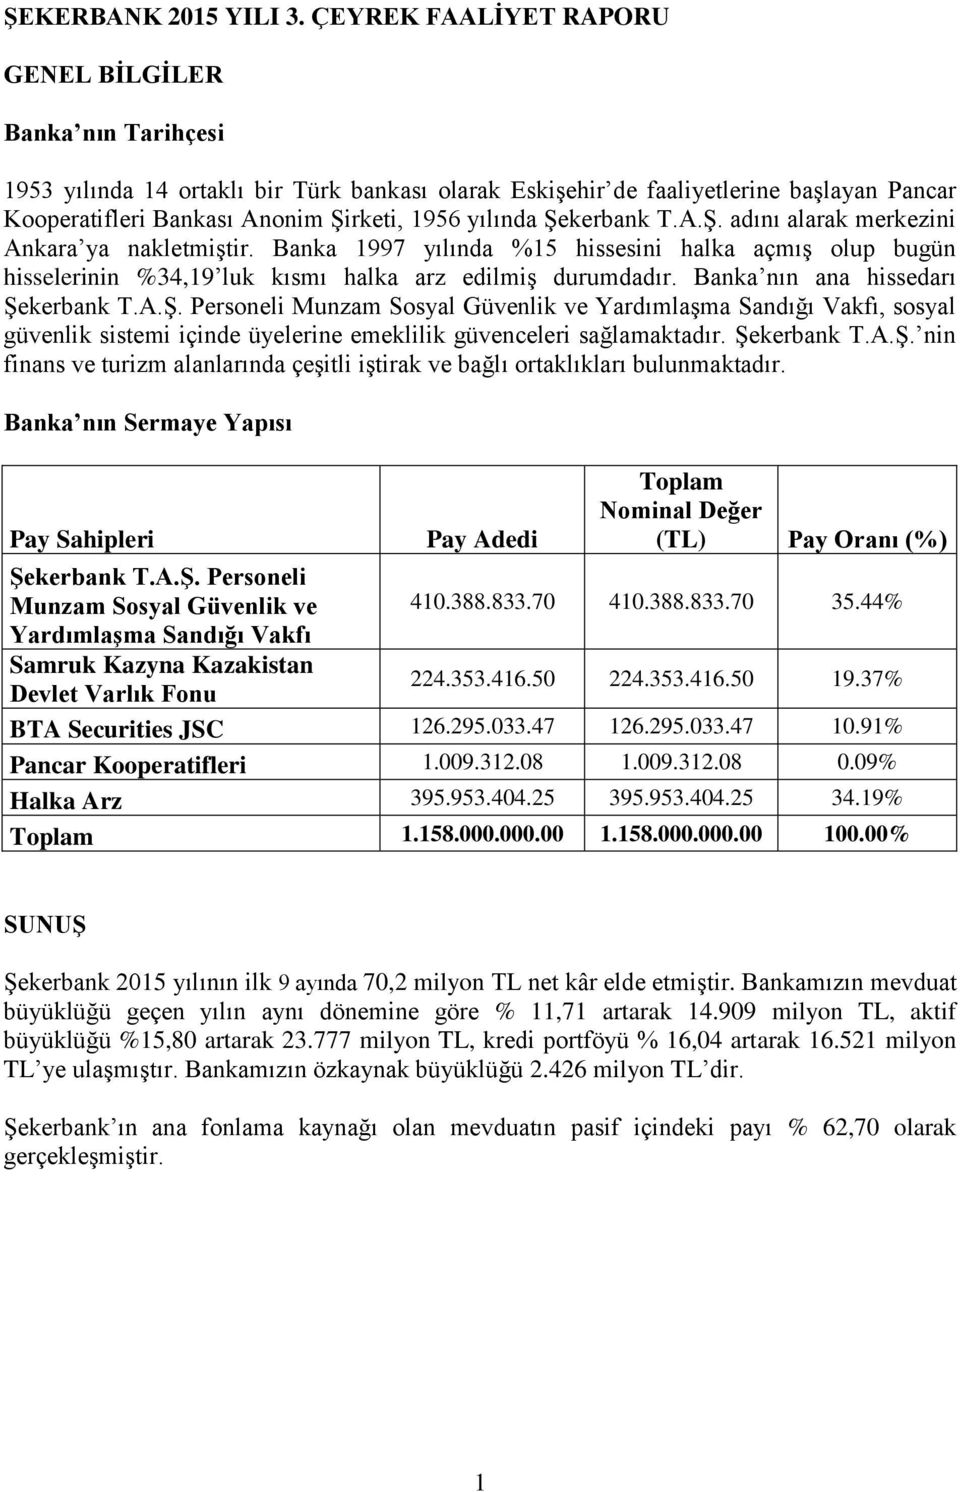 yılında Şekerbank T.A.Ş. adını alarak merkezini Ankara ya nakletmiştir. Banka 1997 yılında %15 hissesini halka açmış olup bugün hisselerinin %34,19 luk kısmı halka arz edilmiş durumdadır.